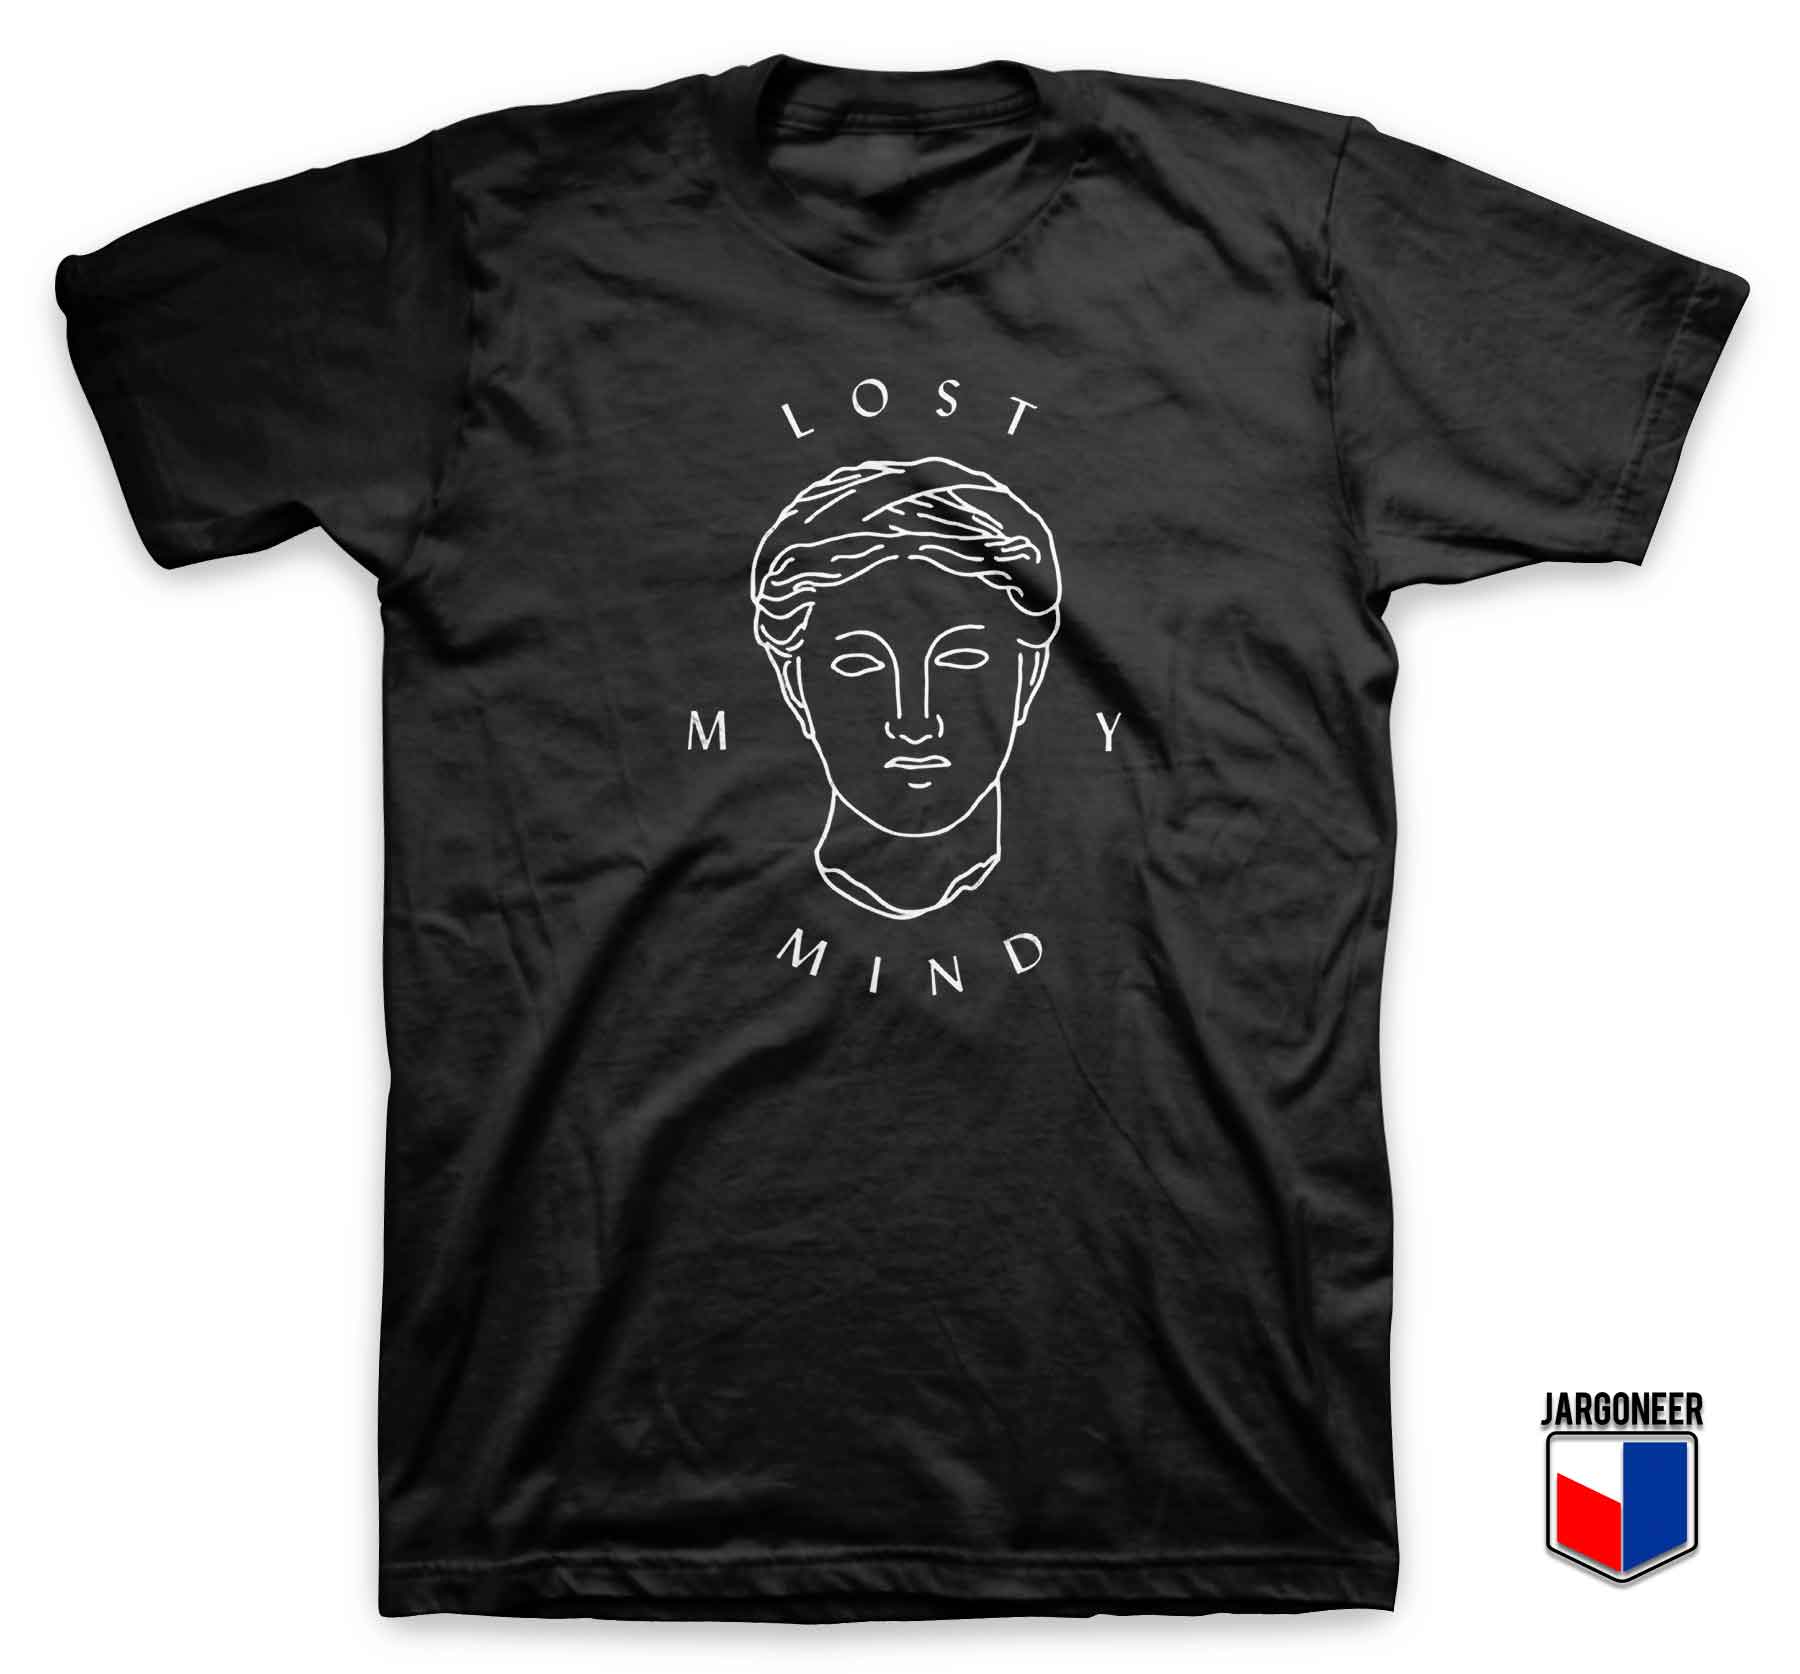 Lost My Mind 3 - Shop Unique Graphic Cool Shirt Designs